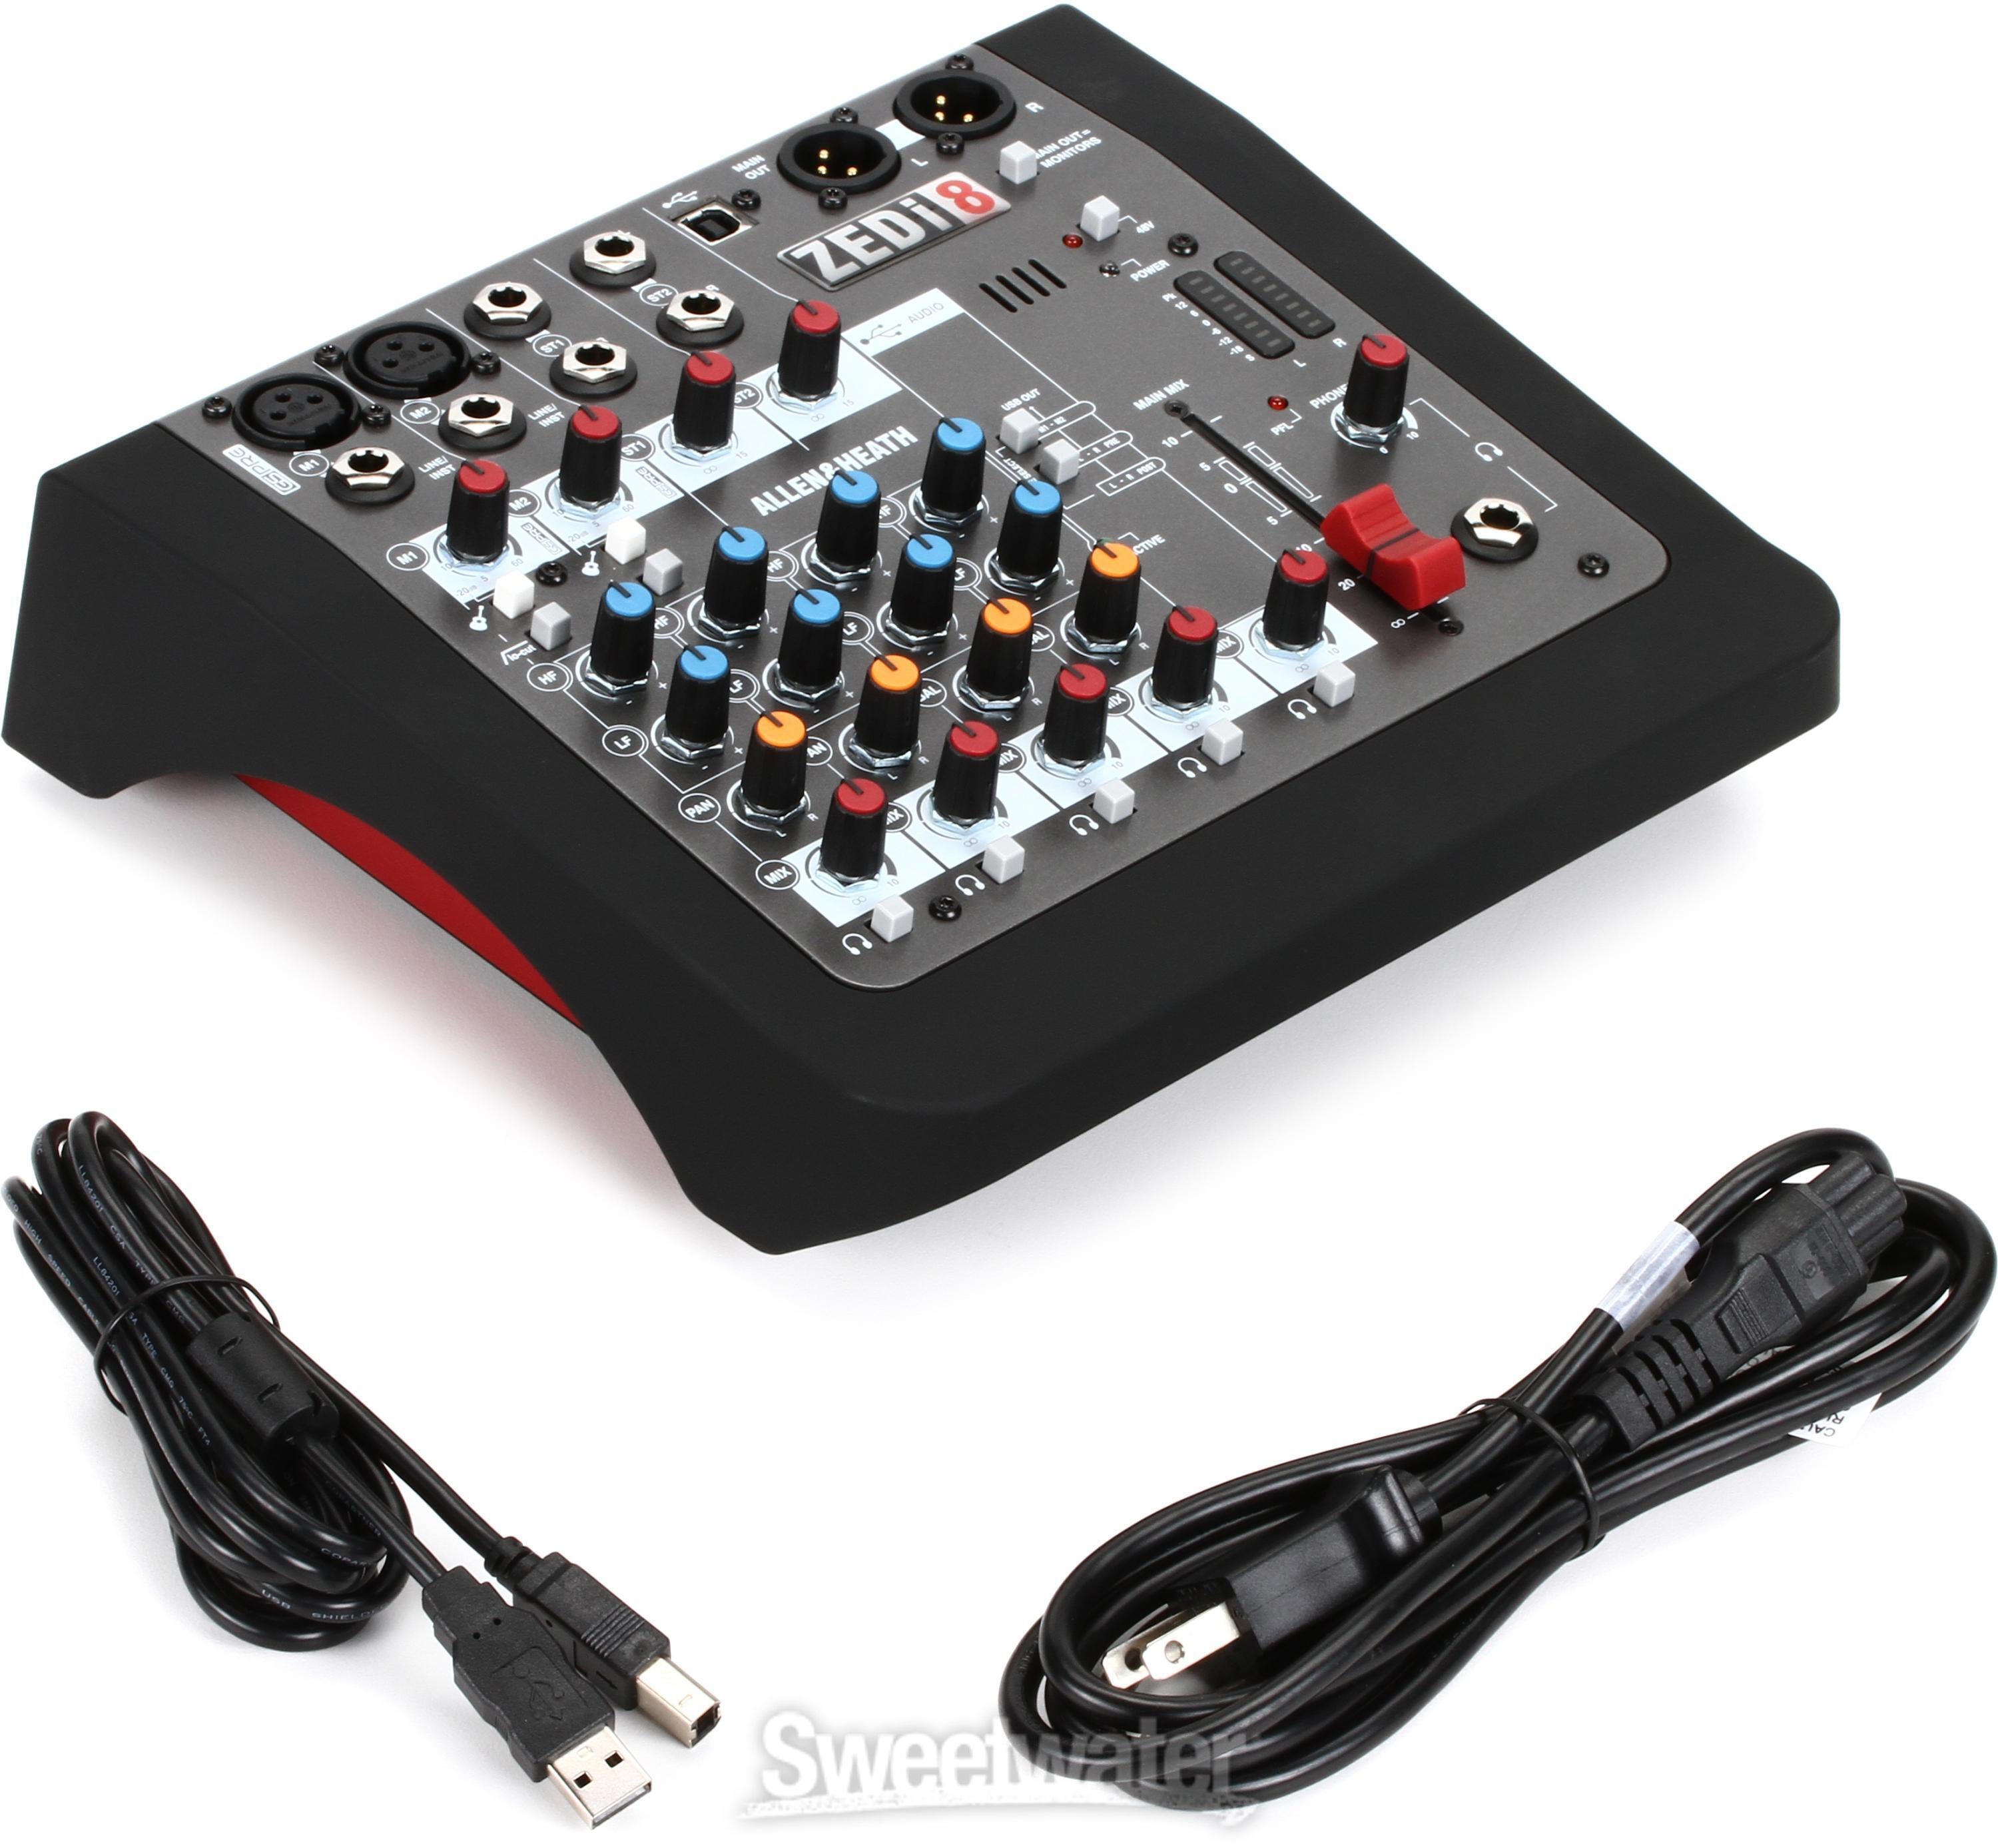 Allen & Heath ZEDi-8 8-channel Mixer with USB Audio Interface